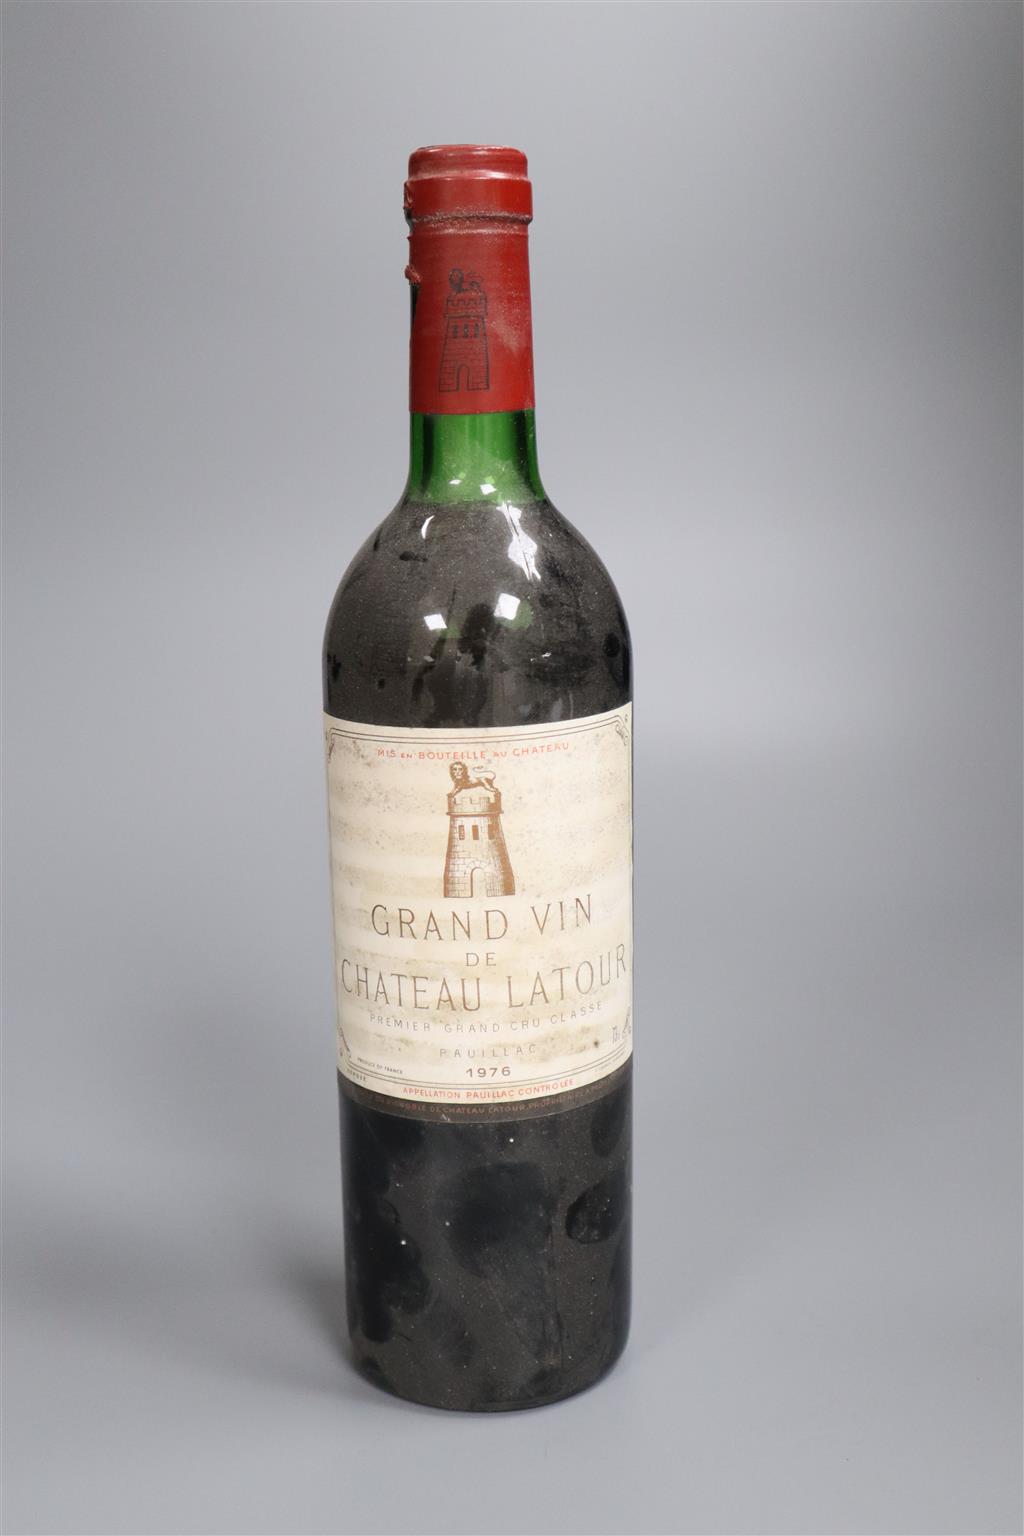 A bottle of Chateau Latour 1976, top shoulder